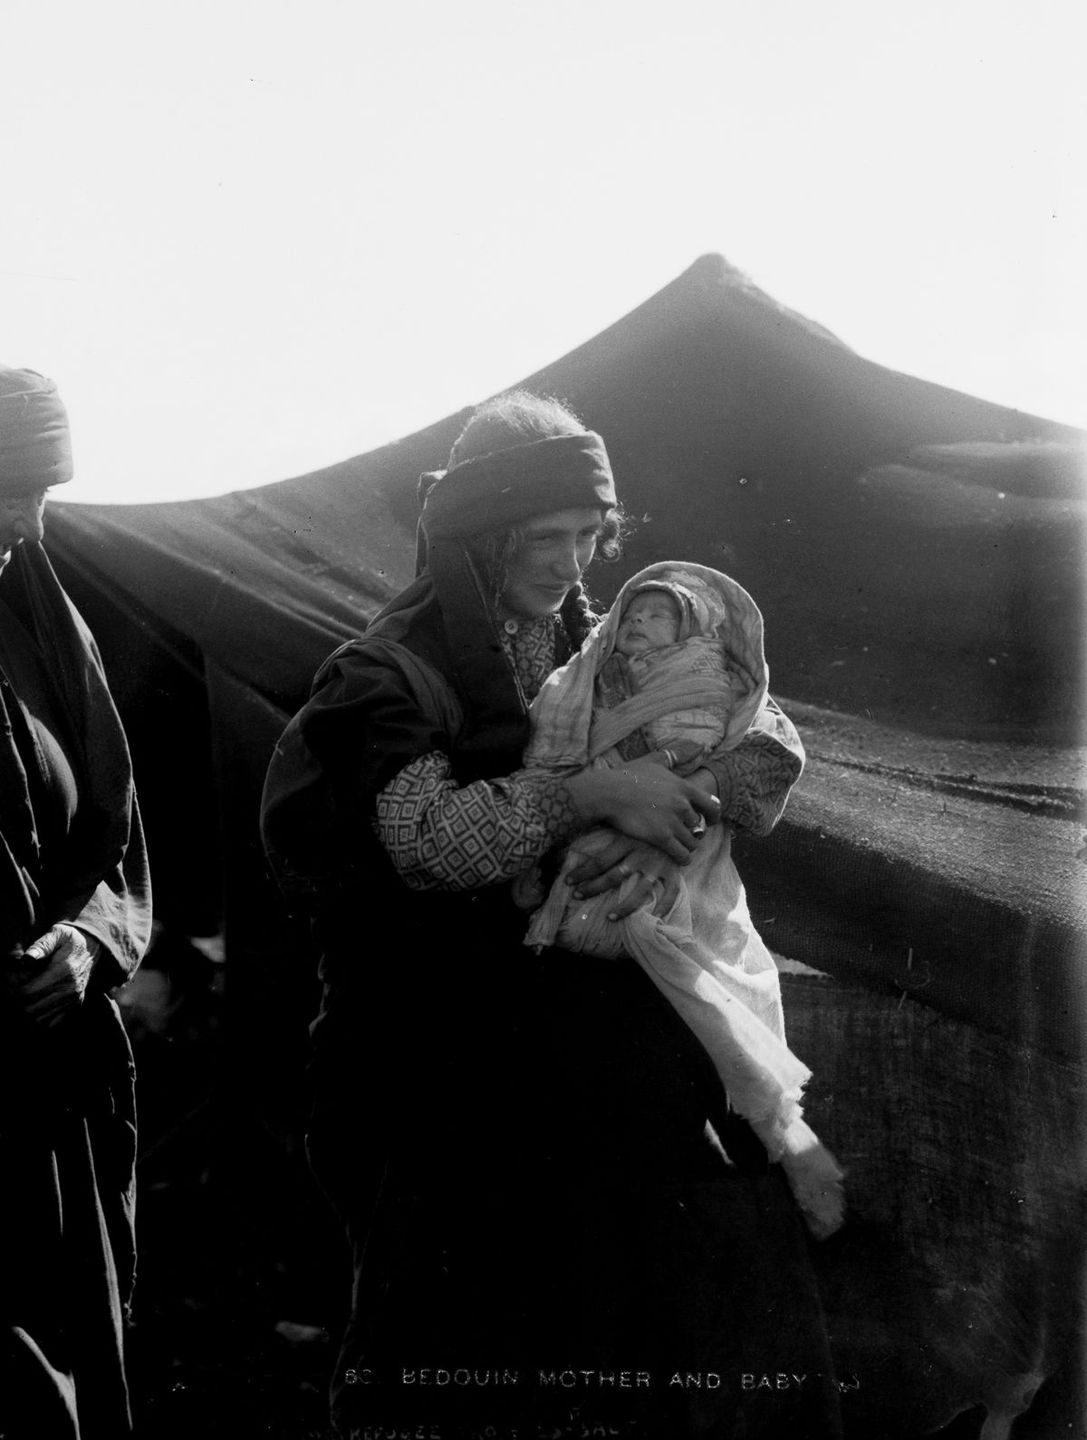 Бедуины в исторических фотографиях  17